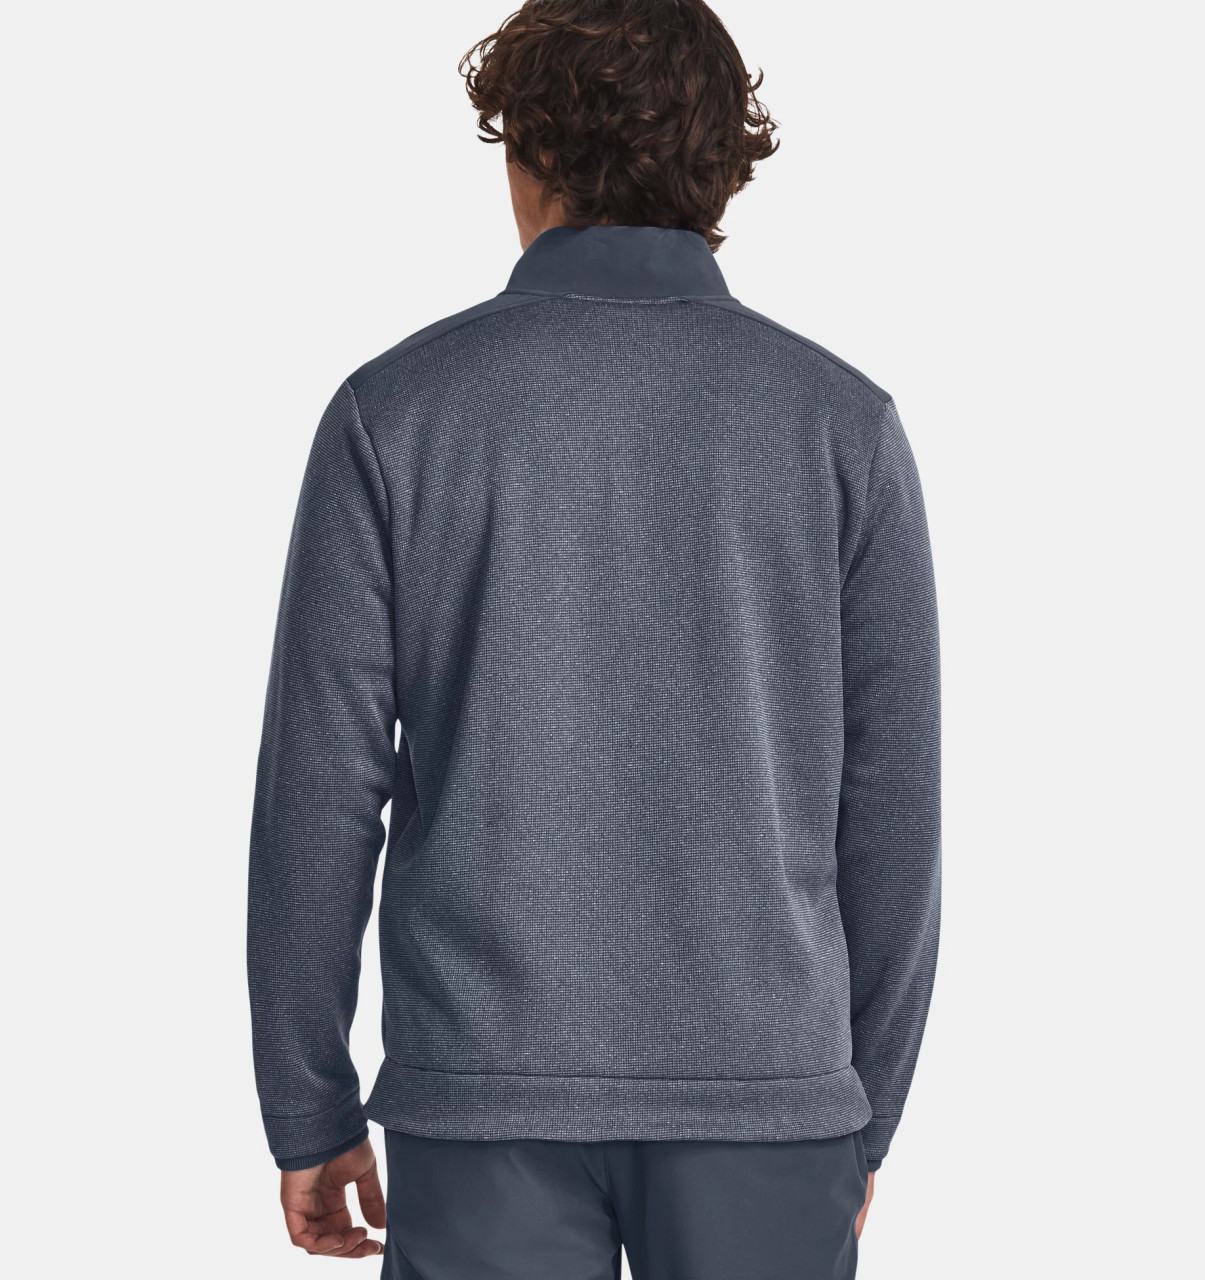 Men's UA Storm SweaterFleece ½ Zip